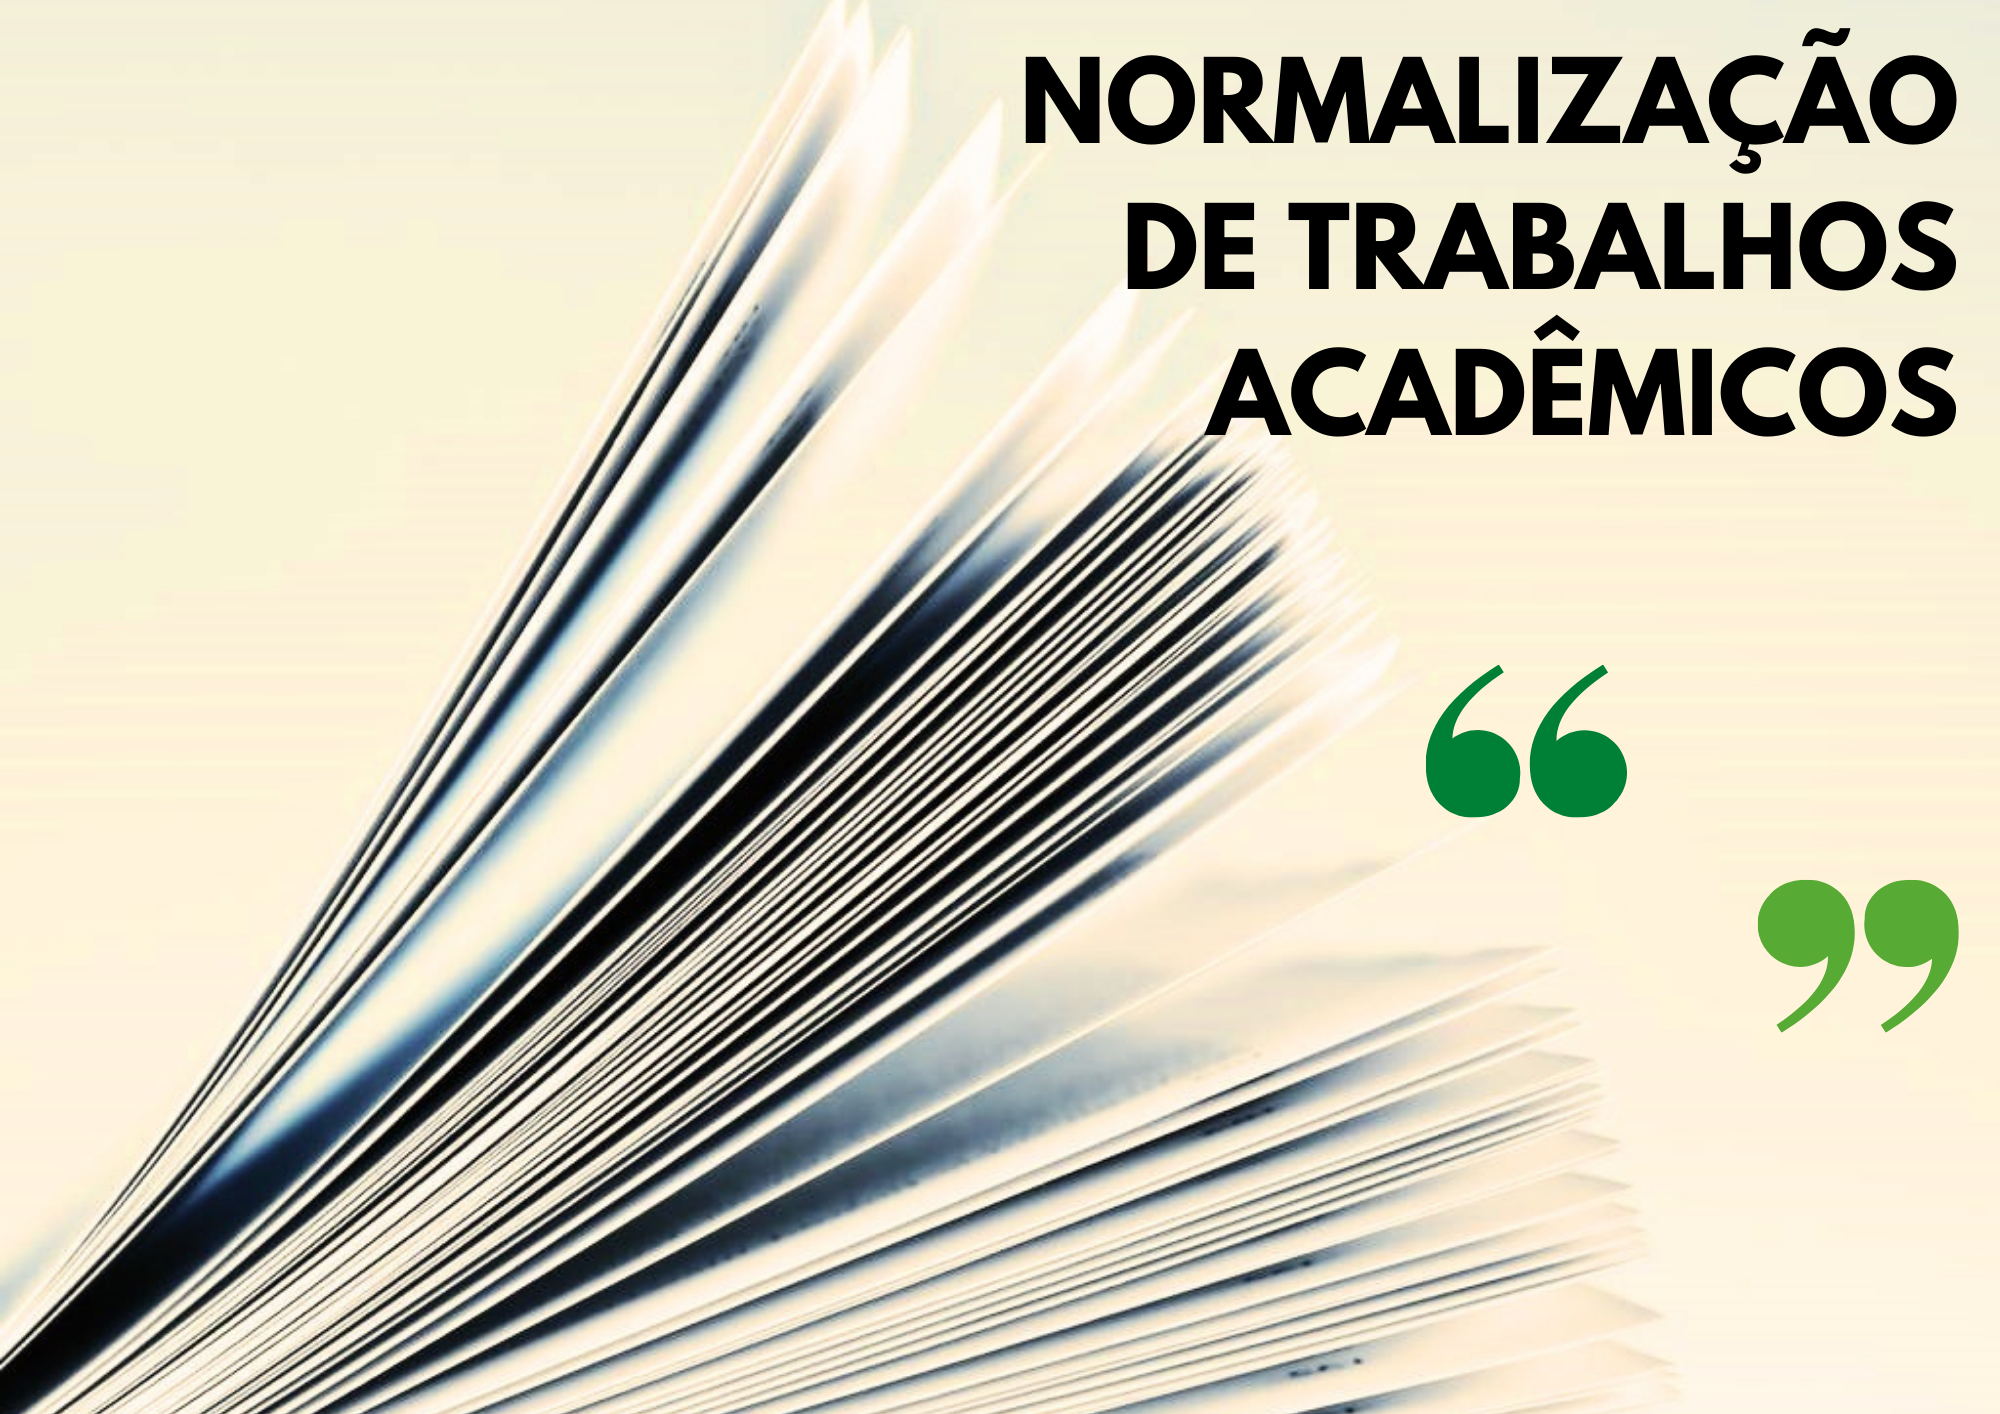 Normalização de trabalhos acadêmicos - Turma 3/2022